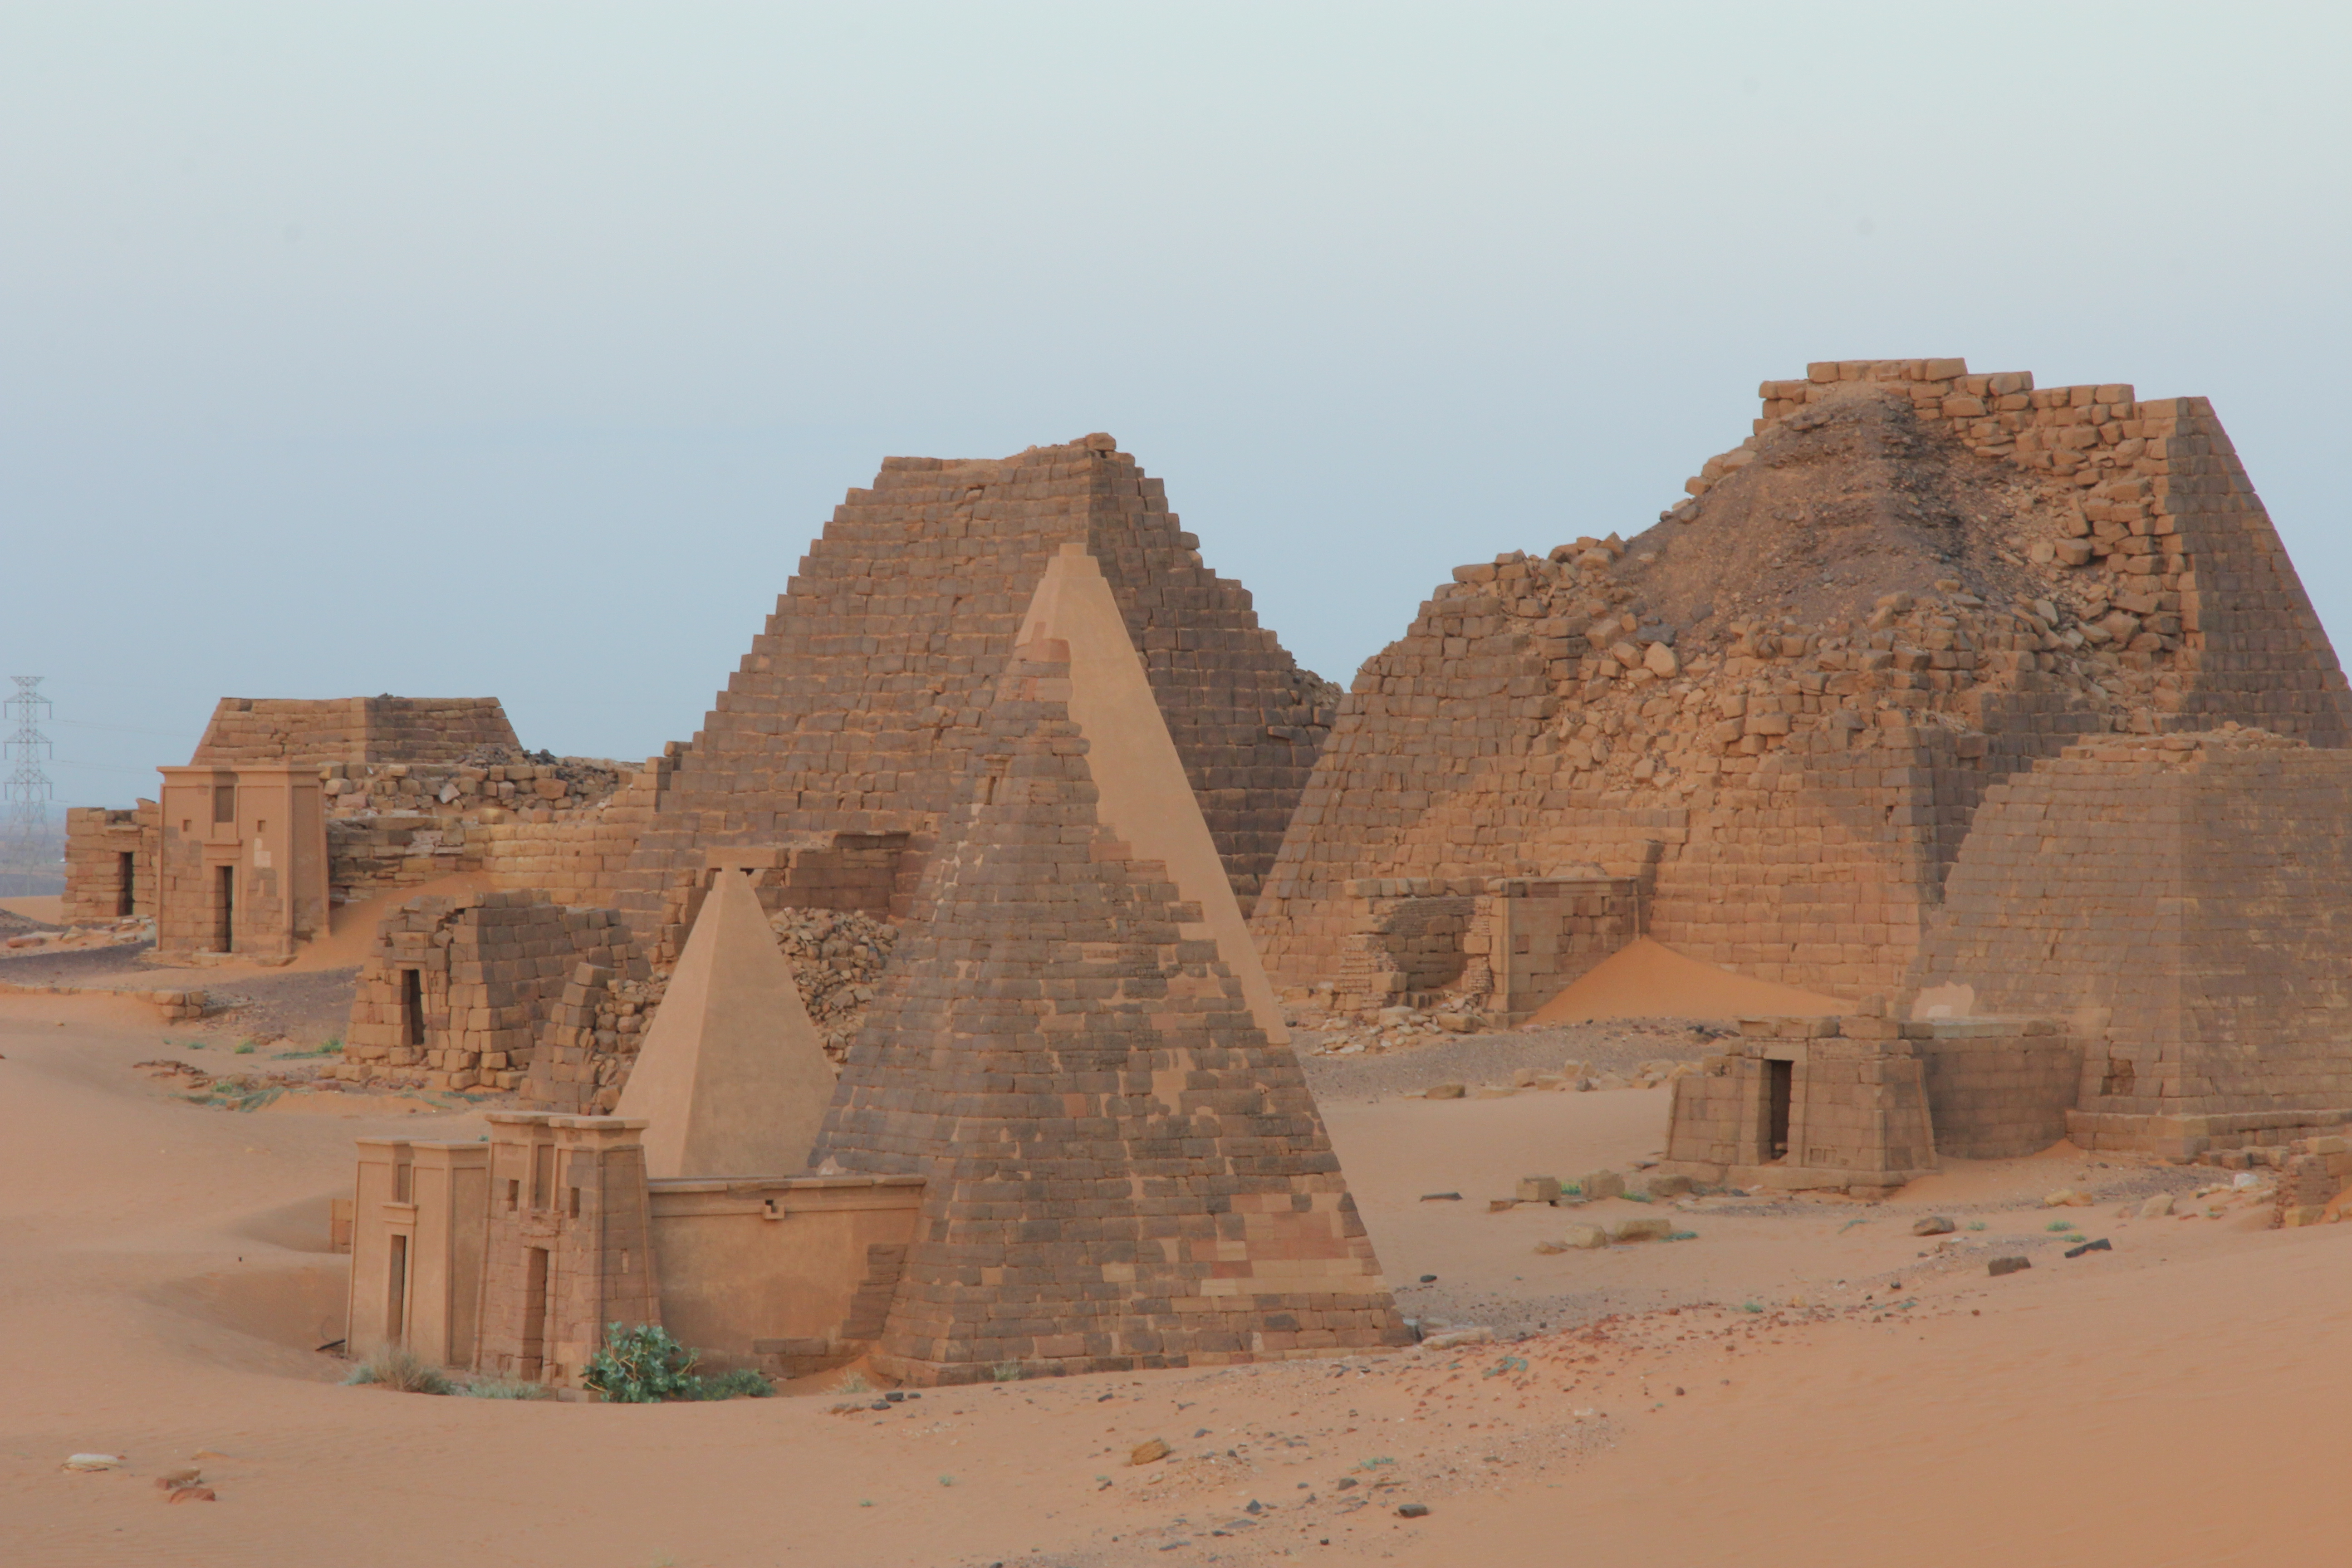 Географическое положение цивилизации мероэ. Пирамиды Мероэ Судан. Нубийские пирамиды в Судане. Мероэ Судан храмы. Царство Мероэ.